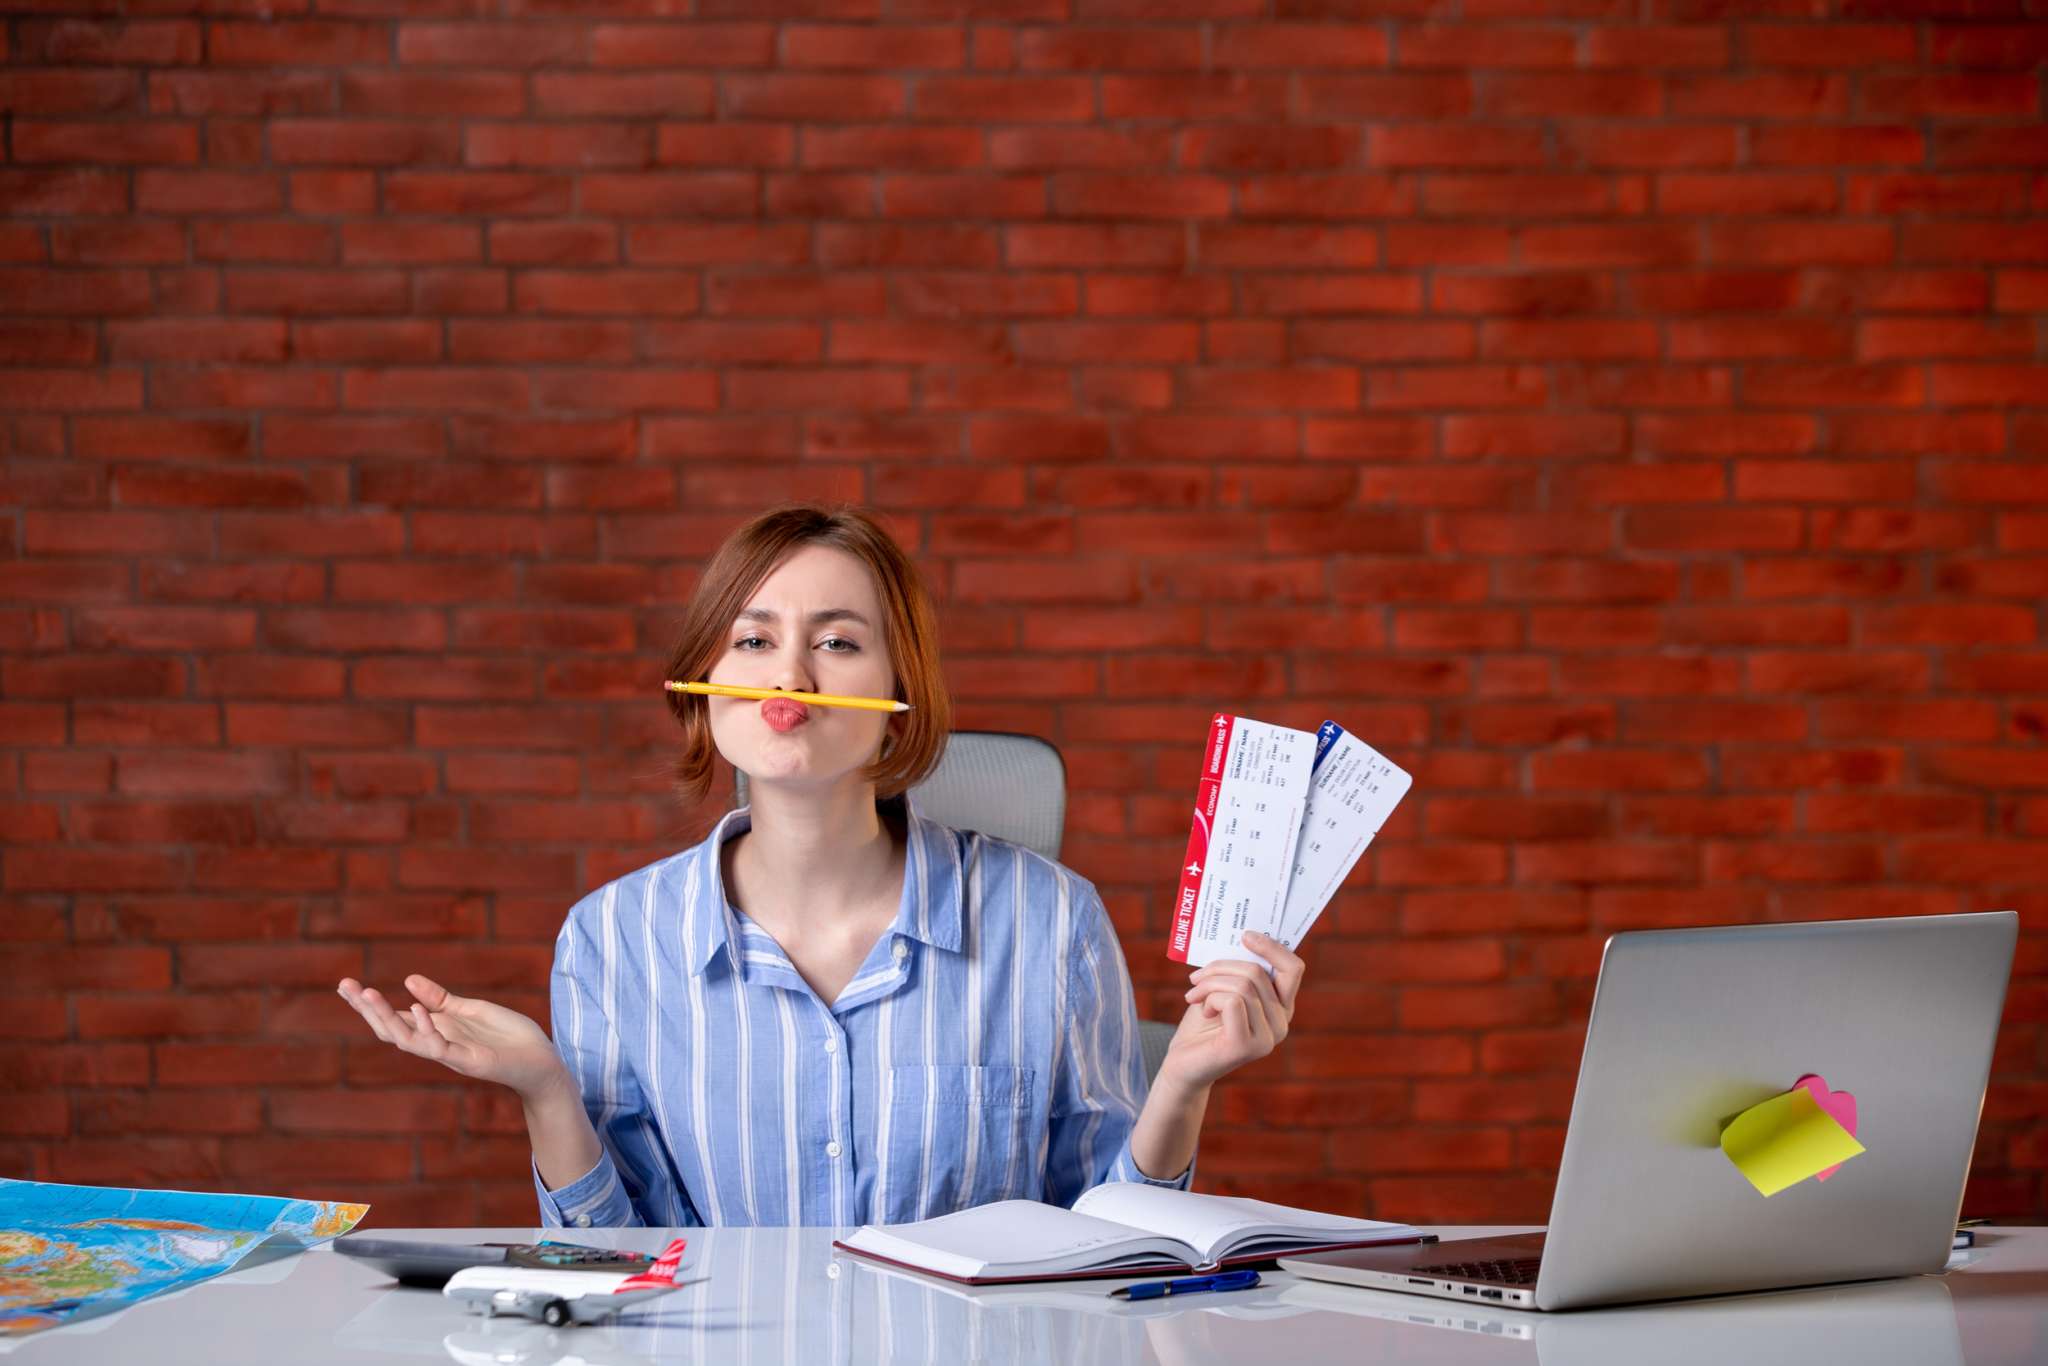 Devenez freelance sans vous soucier de la gestion administrative grâce au portage salarial